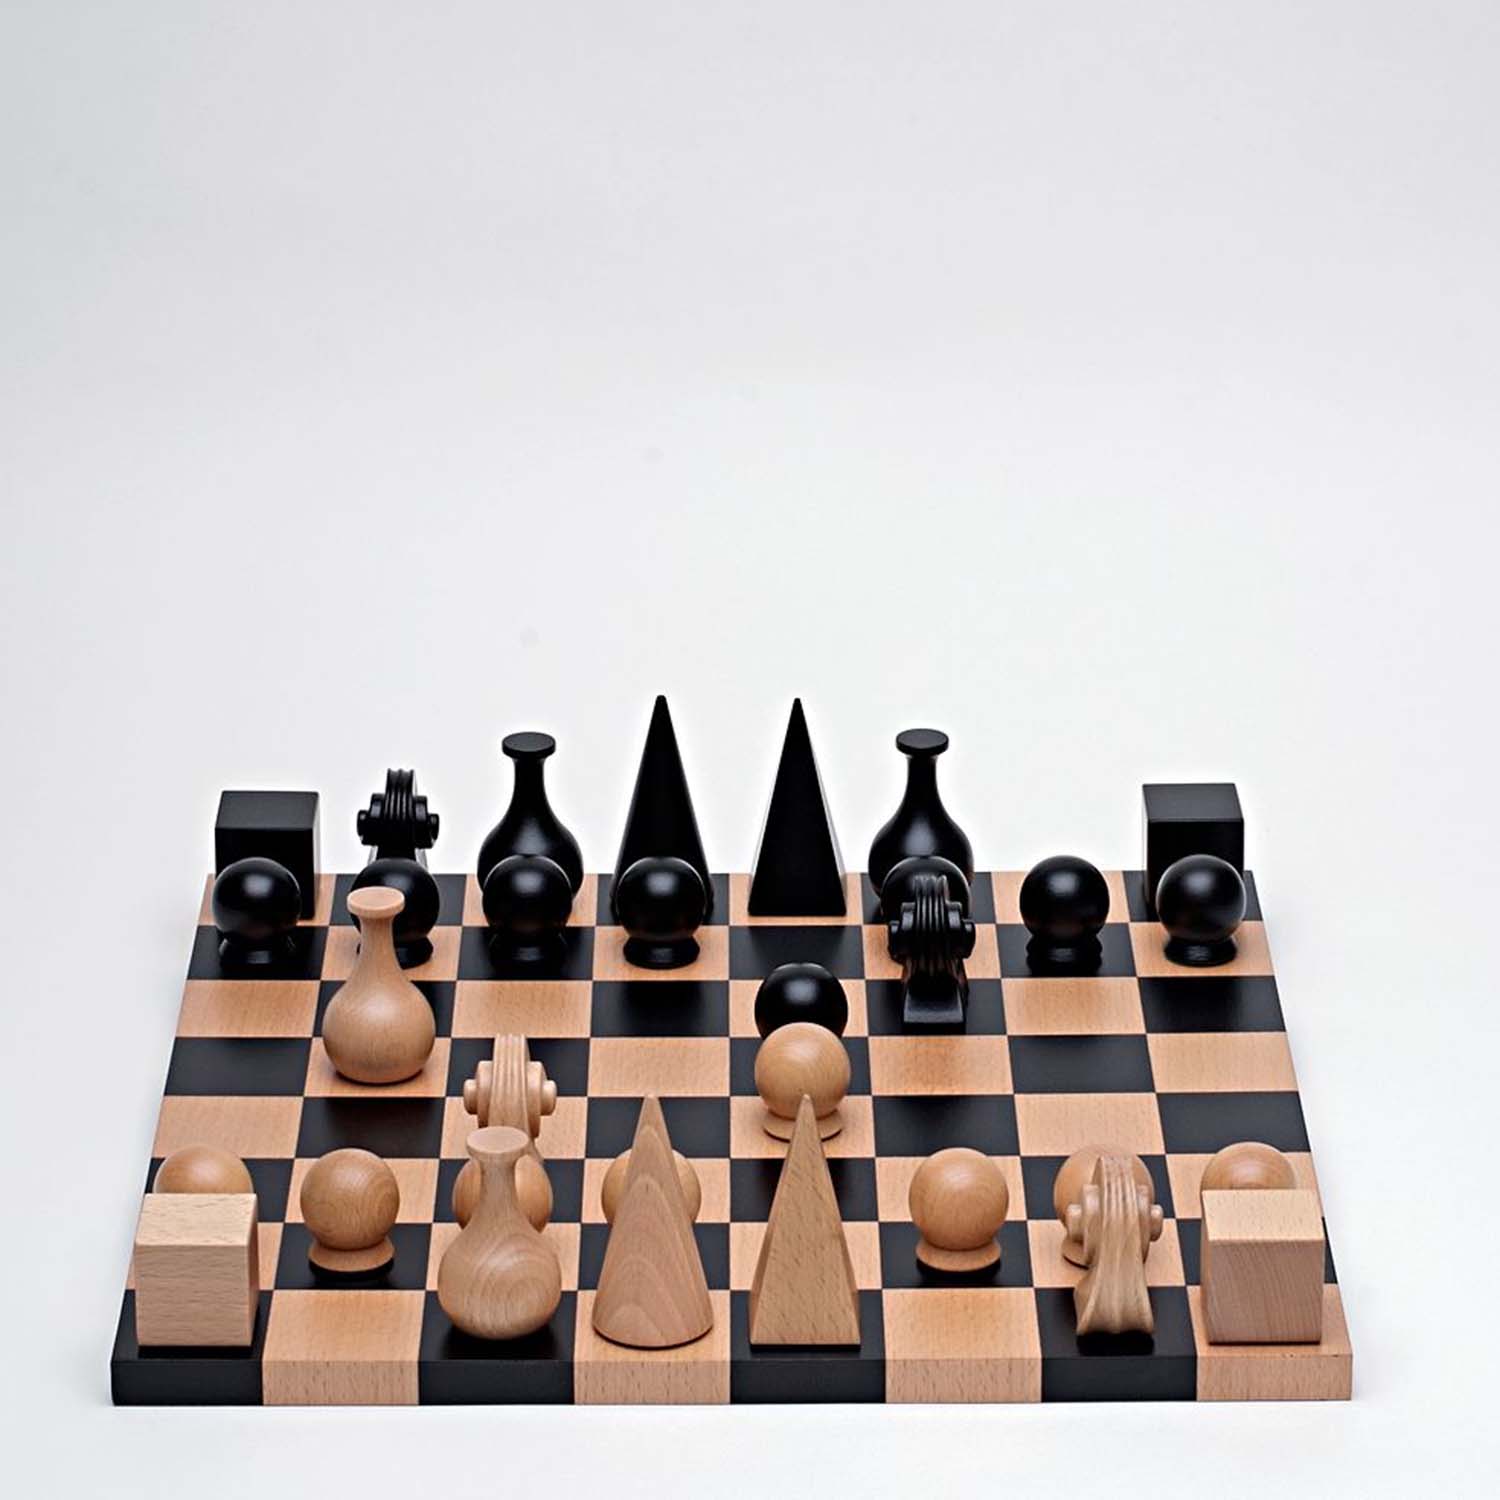 صورة قطع الشطرنج التي وضعها مان راي
